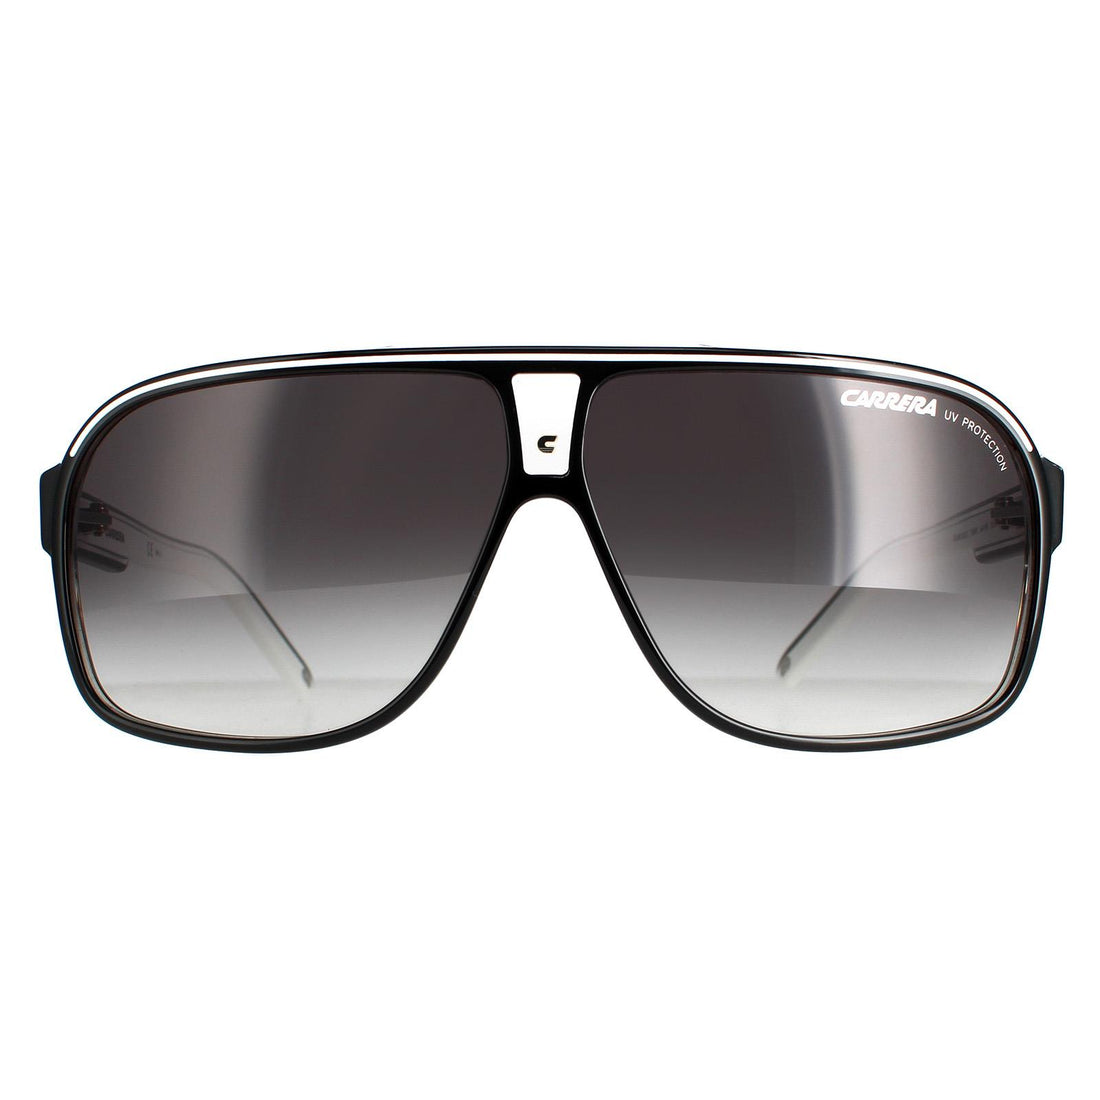 Carrera Grand Prix 2 Sunglasses Black White / Dark Grey Gradient